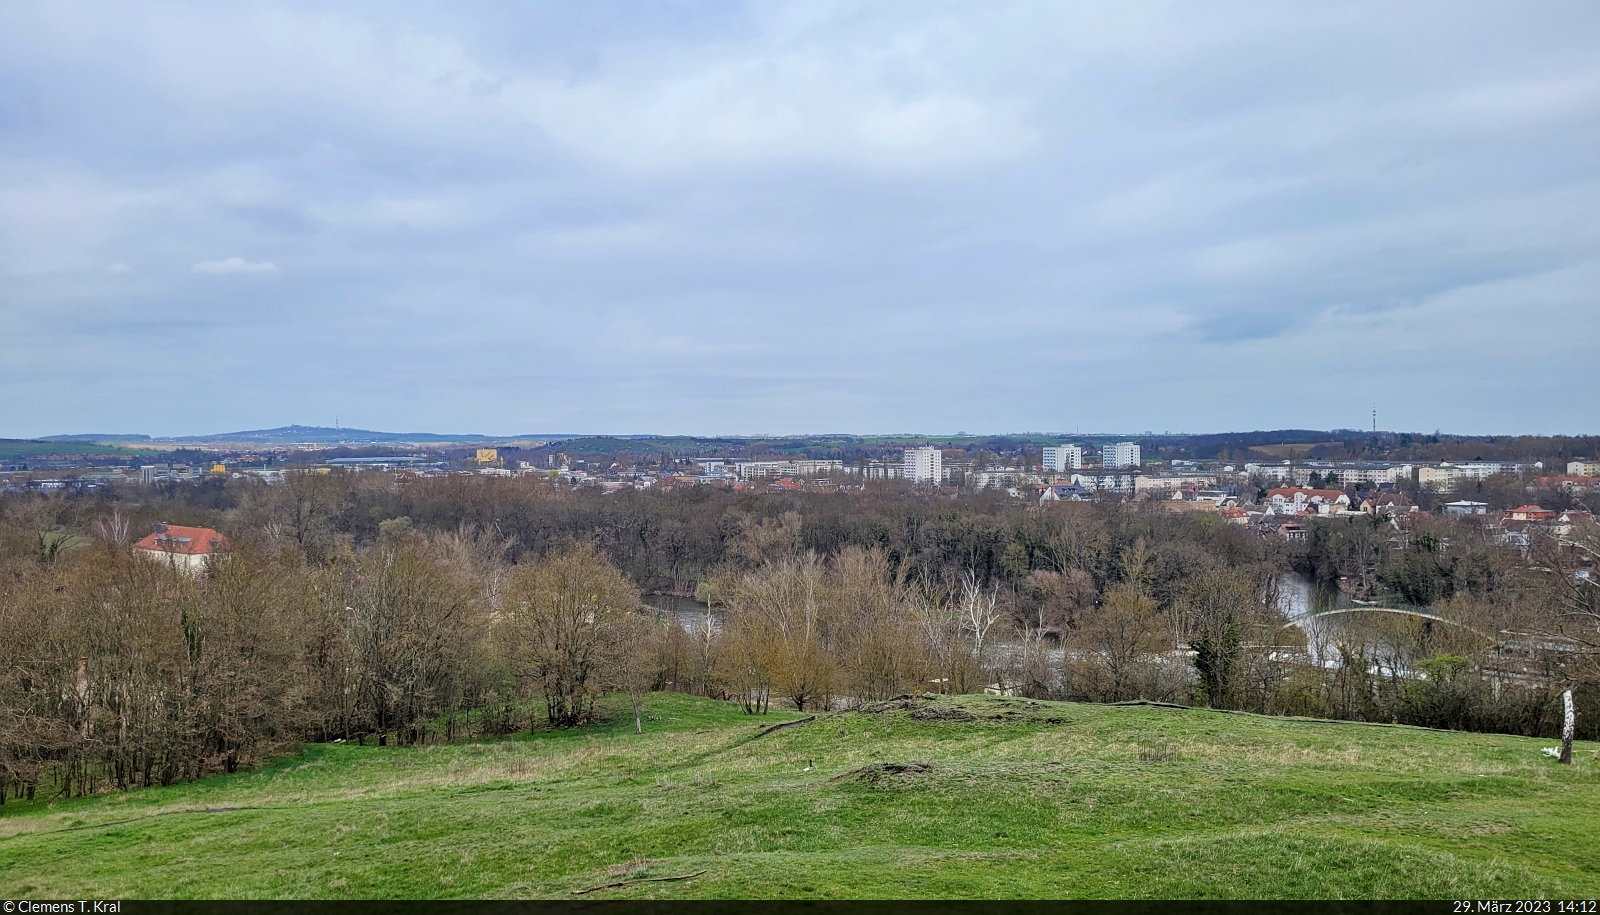 Blick vom Ochsenberg auf das nördliche Umland von Halle (Saale). Am linken Bildrand ist der Petersberg erkennbar.

🕓 29.3.2023 | 14:12 Uhr